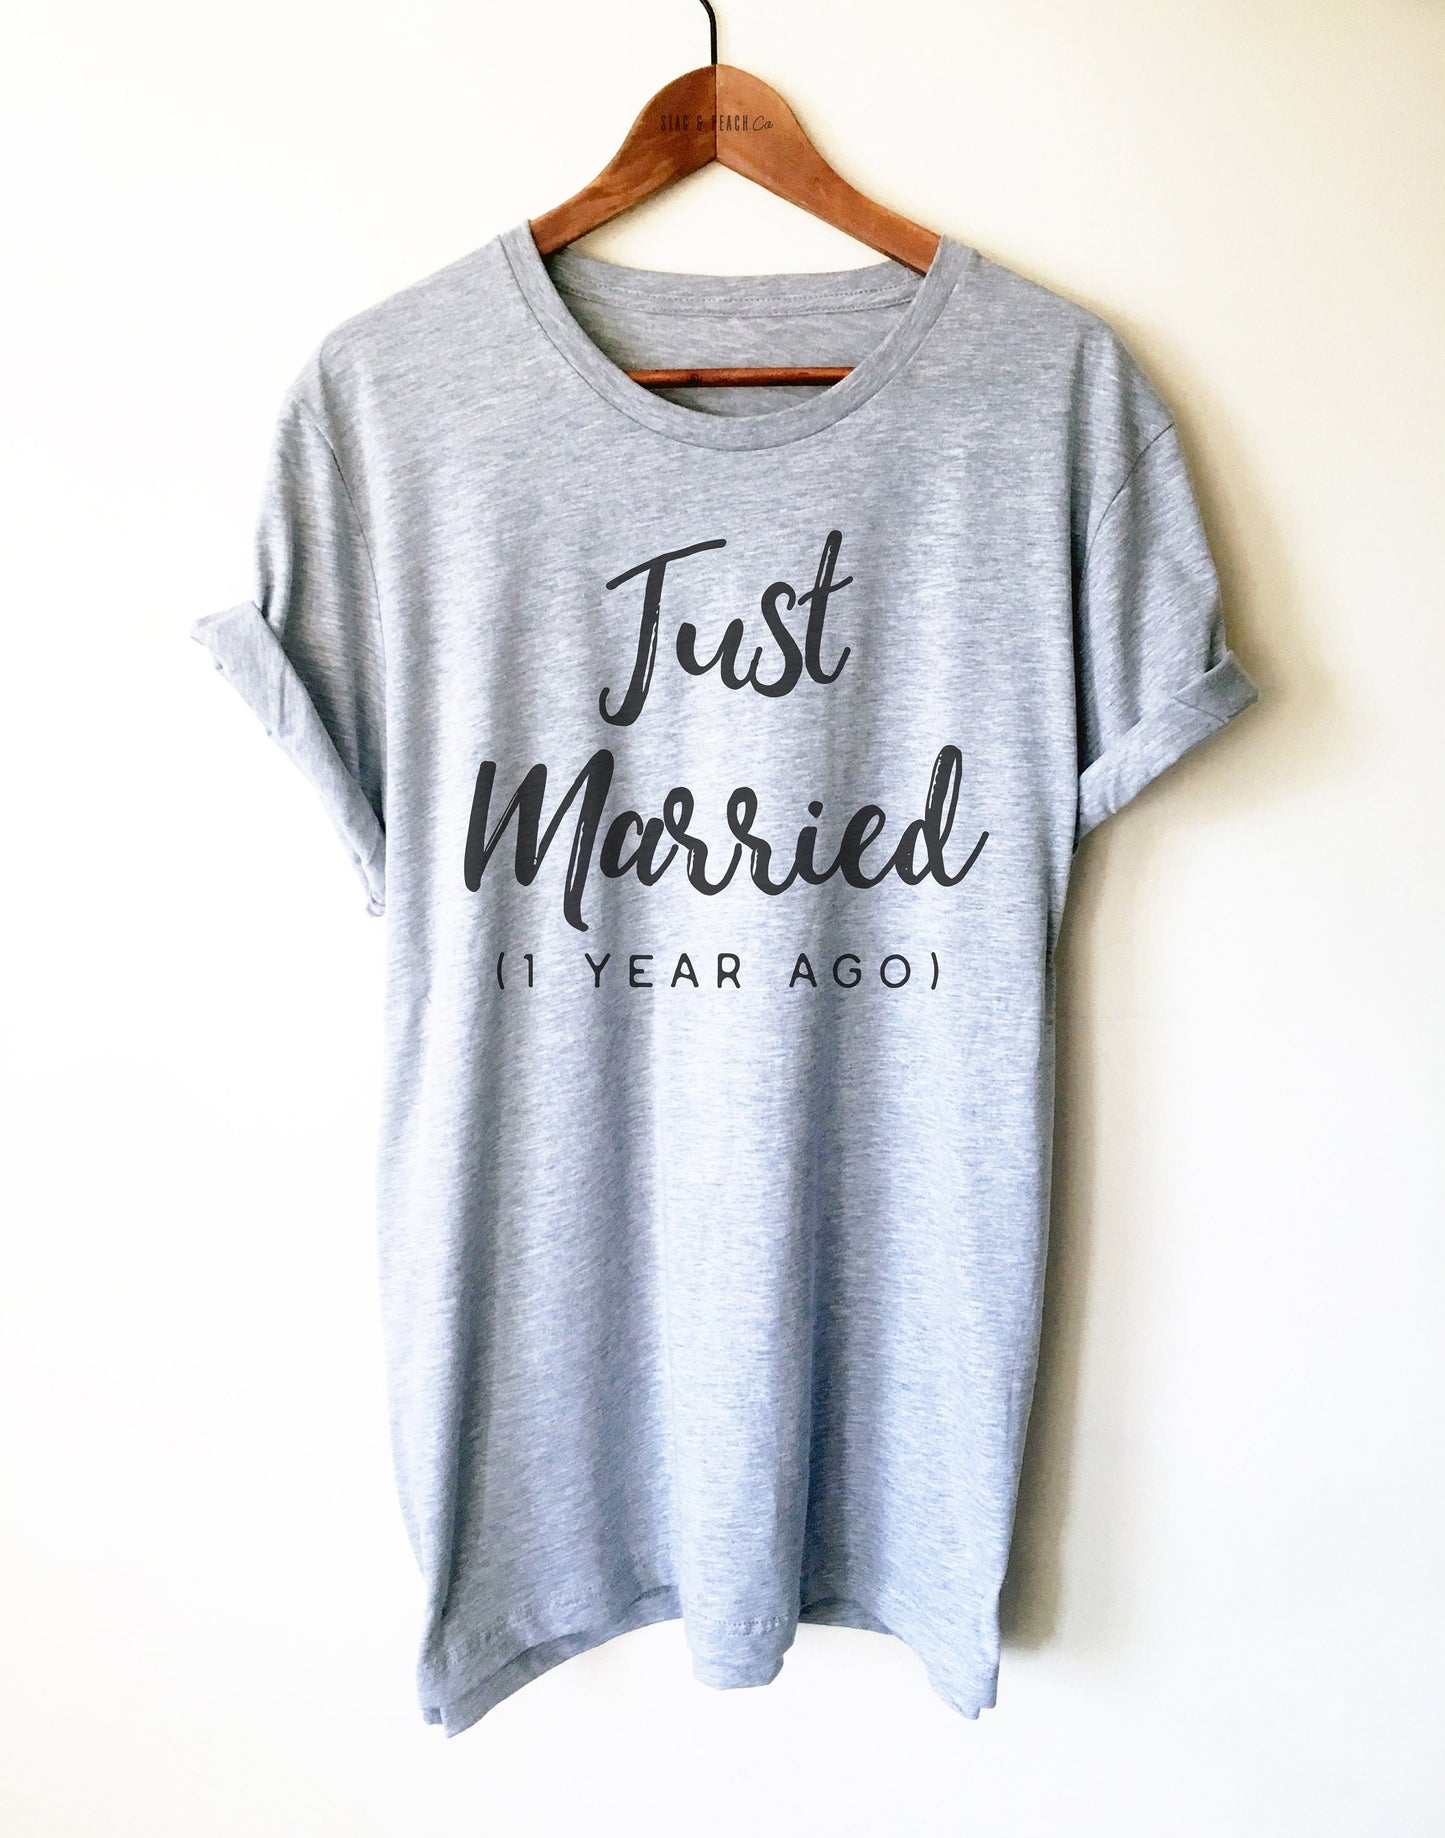 Just Married 1 Year Ago Unisex Shirt - 1st Wedding Anniversary Gift, Honeymoon Shirt, Mini Moon Shirt, 1 Year Anniversary, Gift For Wife